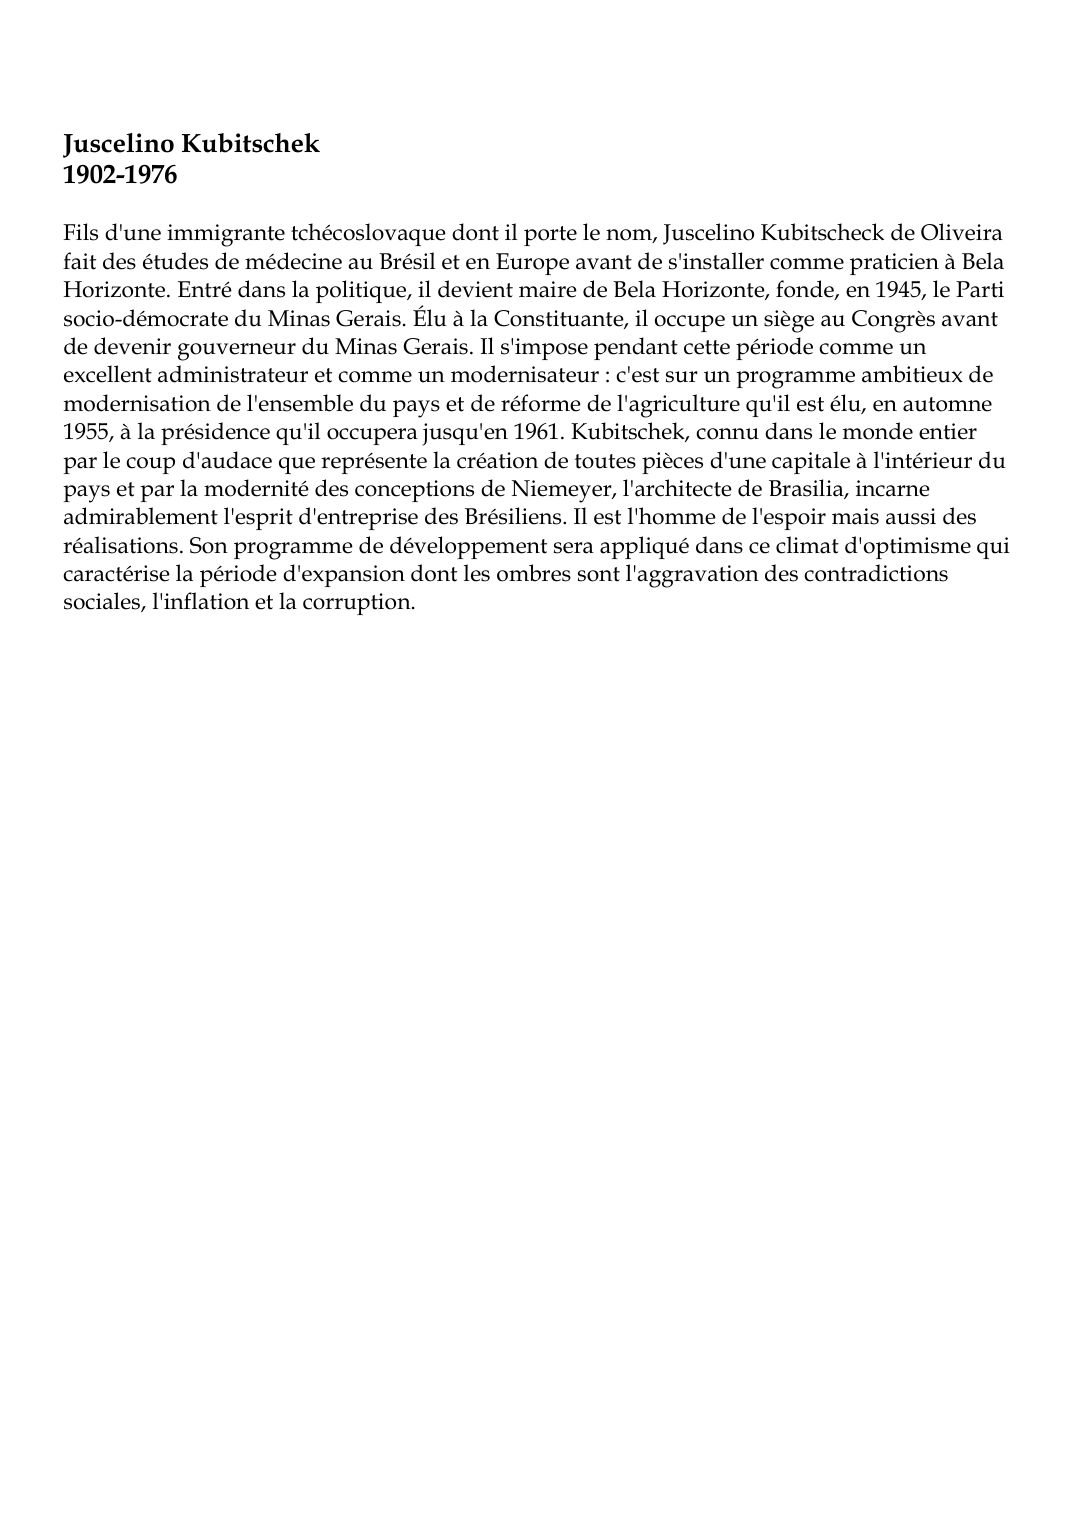 Prévisualisation du document Juscelino Kubitschek1902-1976Fils d'une immigrante tchécoslovaque dont il porte le nom, Juscelino Kubitscheck de Oliveirafait des études de médecine au Brésil et en Europe avant de s'installer comme praticien à BelaHorizonte.